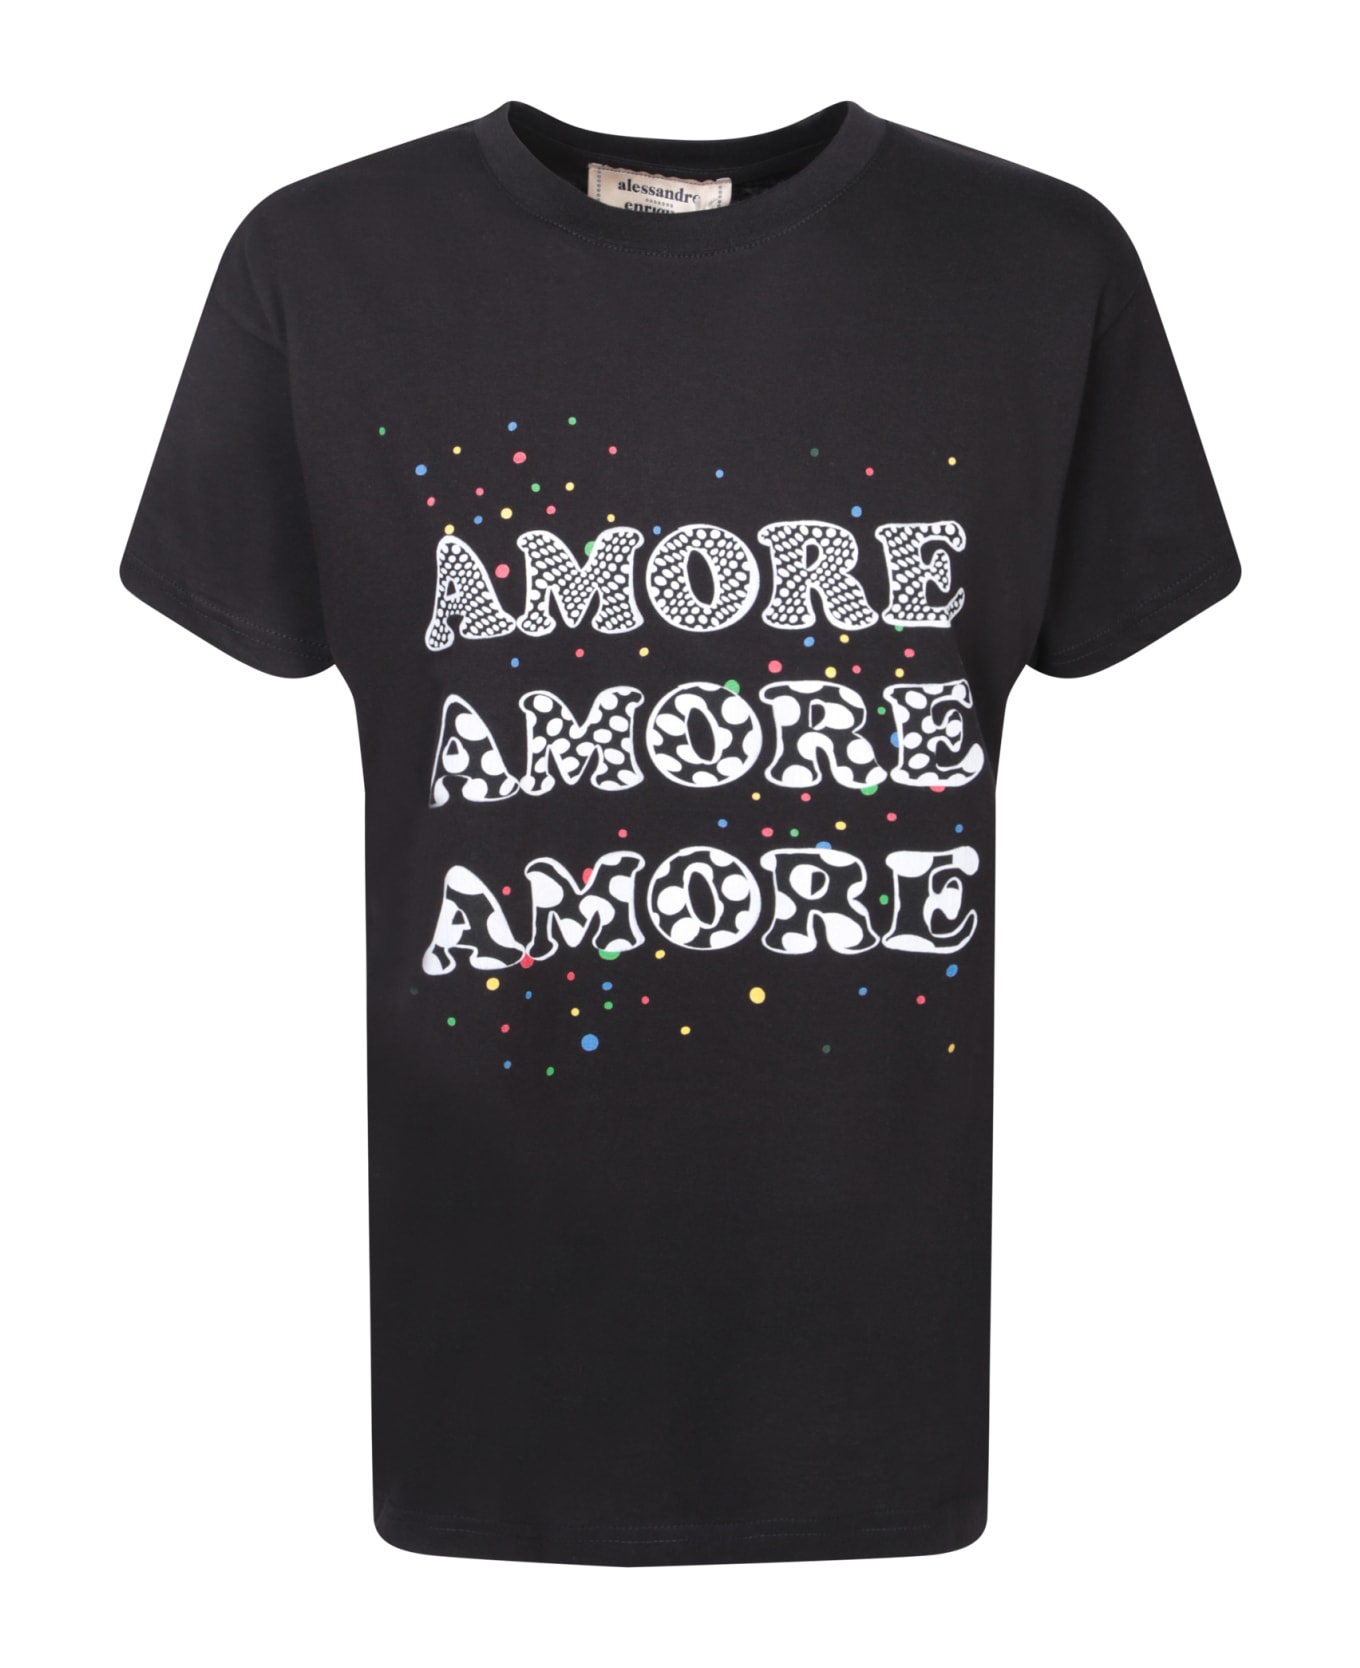 Alessandro Enriquez Amore Black T-shirt - Black